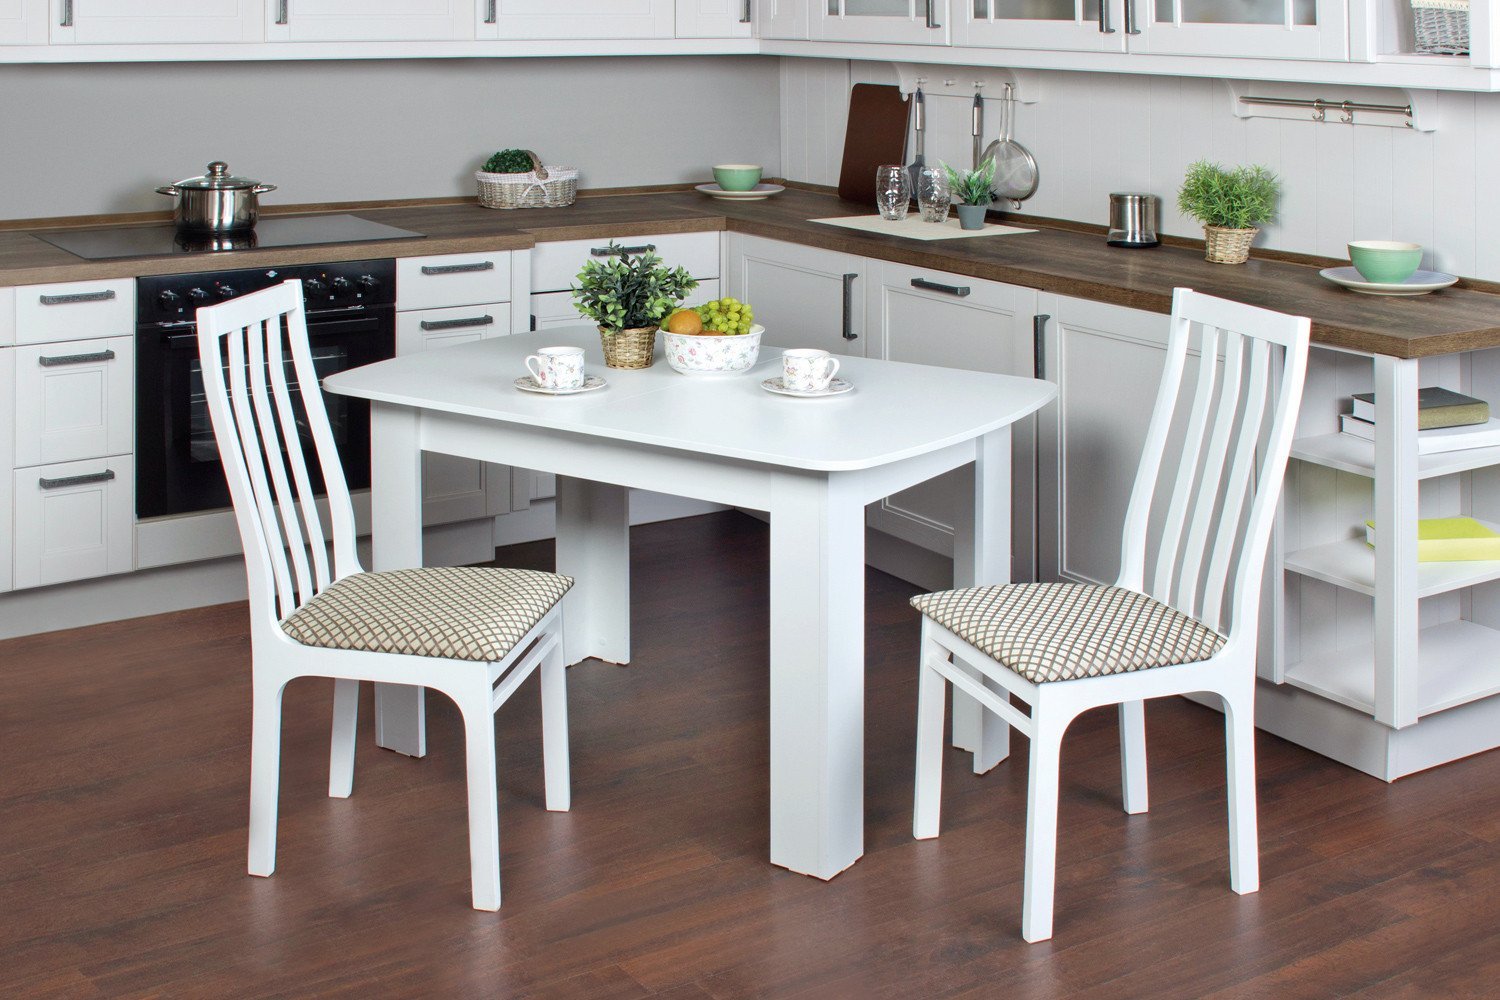 Стол кухонный для столовой. Стол хофф белый кухонный. Хофф обеденная группа для кухни. Хофф столы кухонные раздвижные. Хофф столы и стулья для кухни.